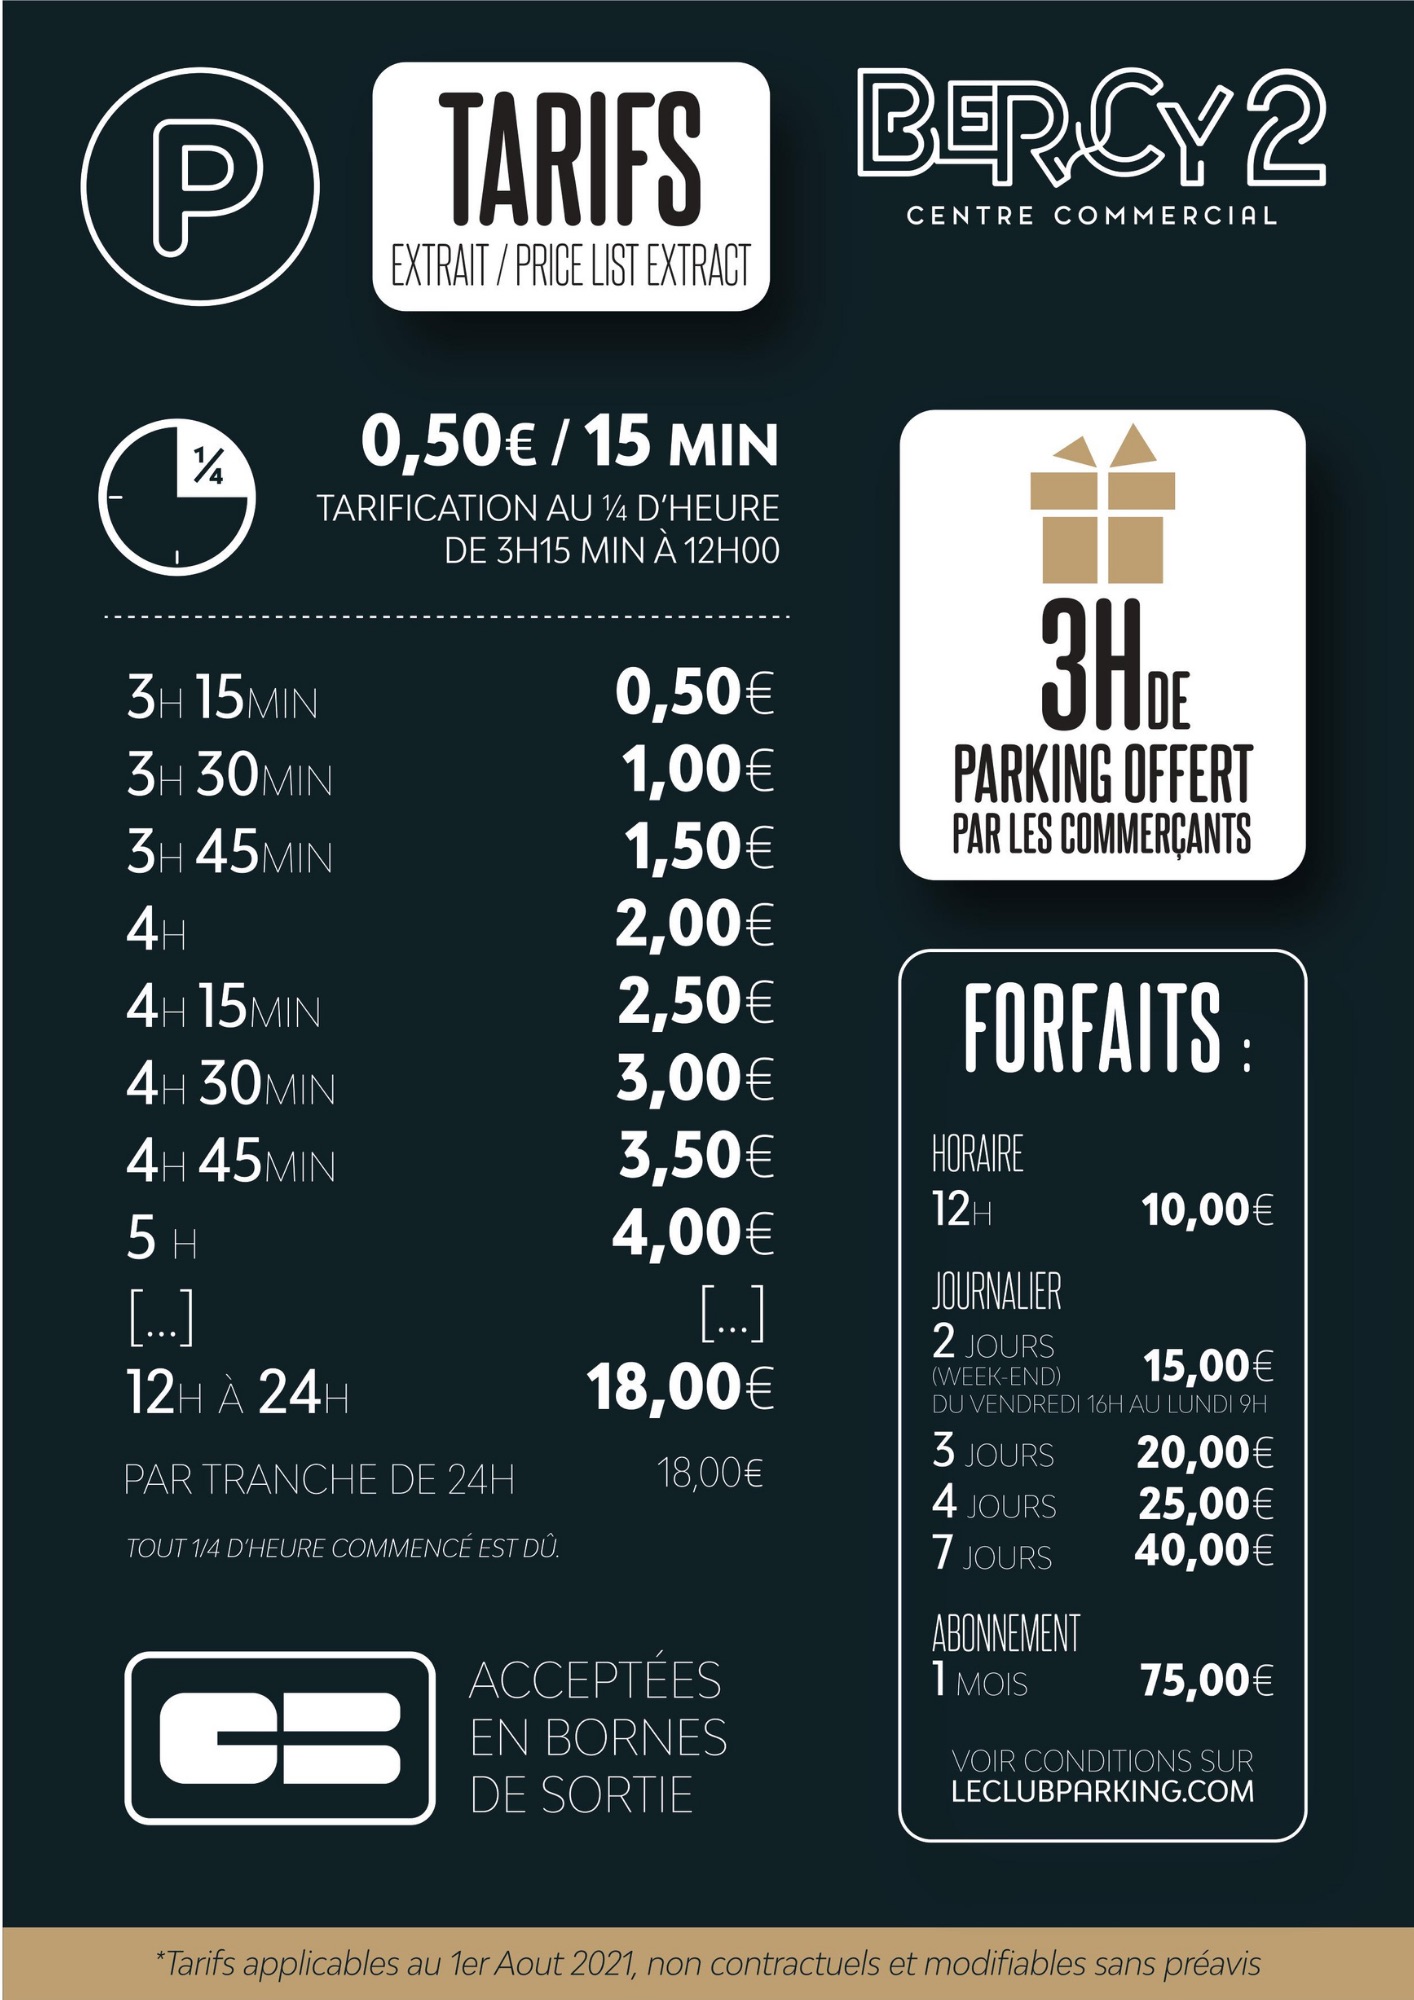 Parking Bercy 2 - Gare de Lyon et Gare de Bercy - Le Club Parking